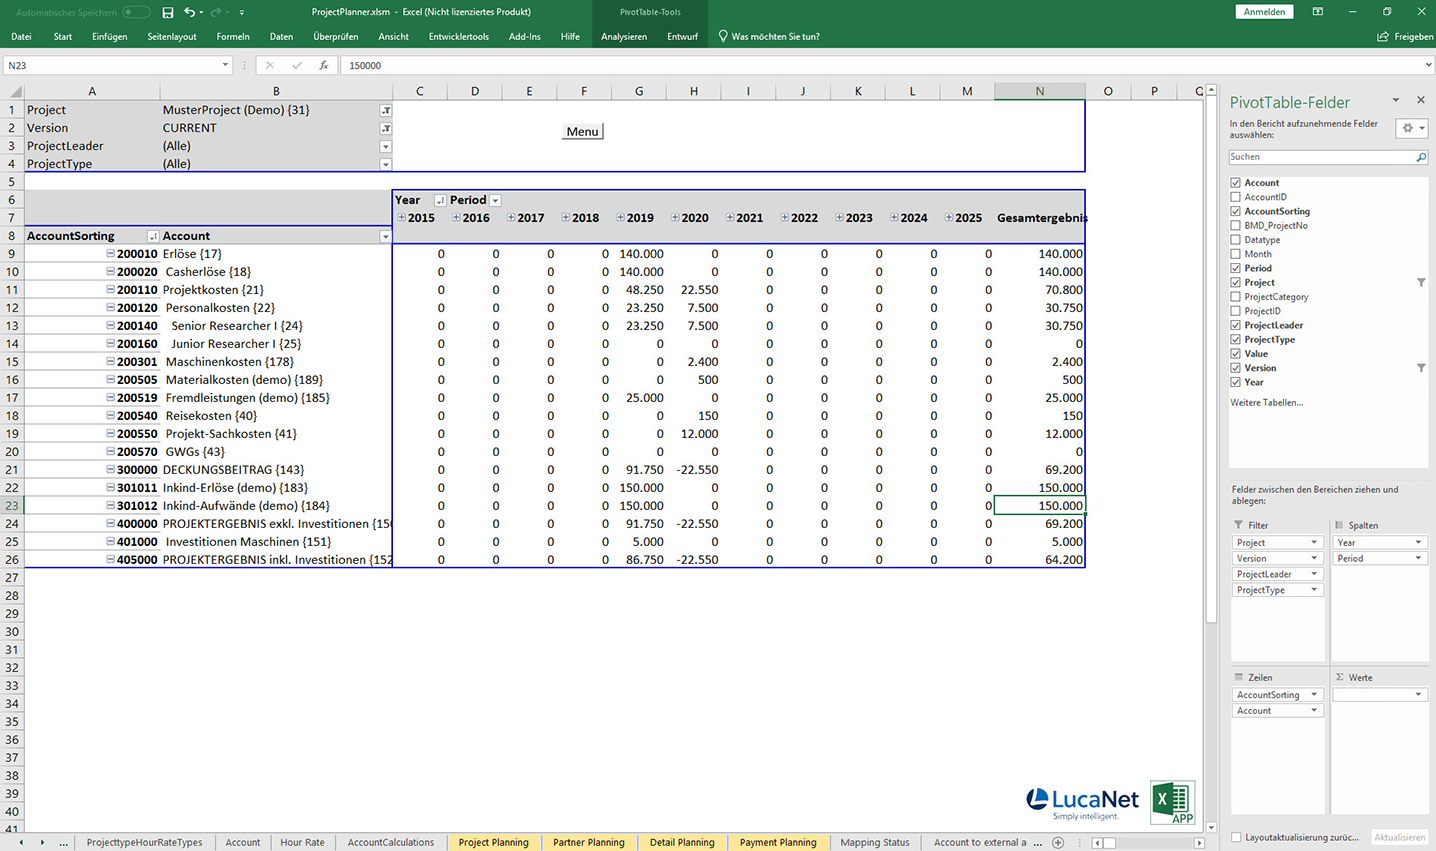 Report in Excel APP Projektplanung für Forschungsunternehmen mit LucaNet, von consultnetwork